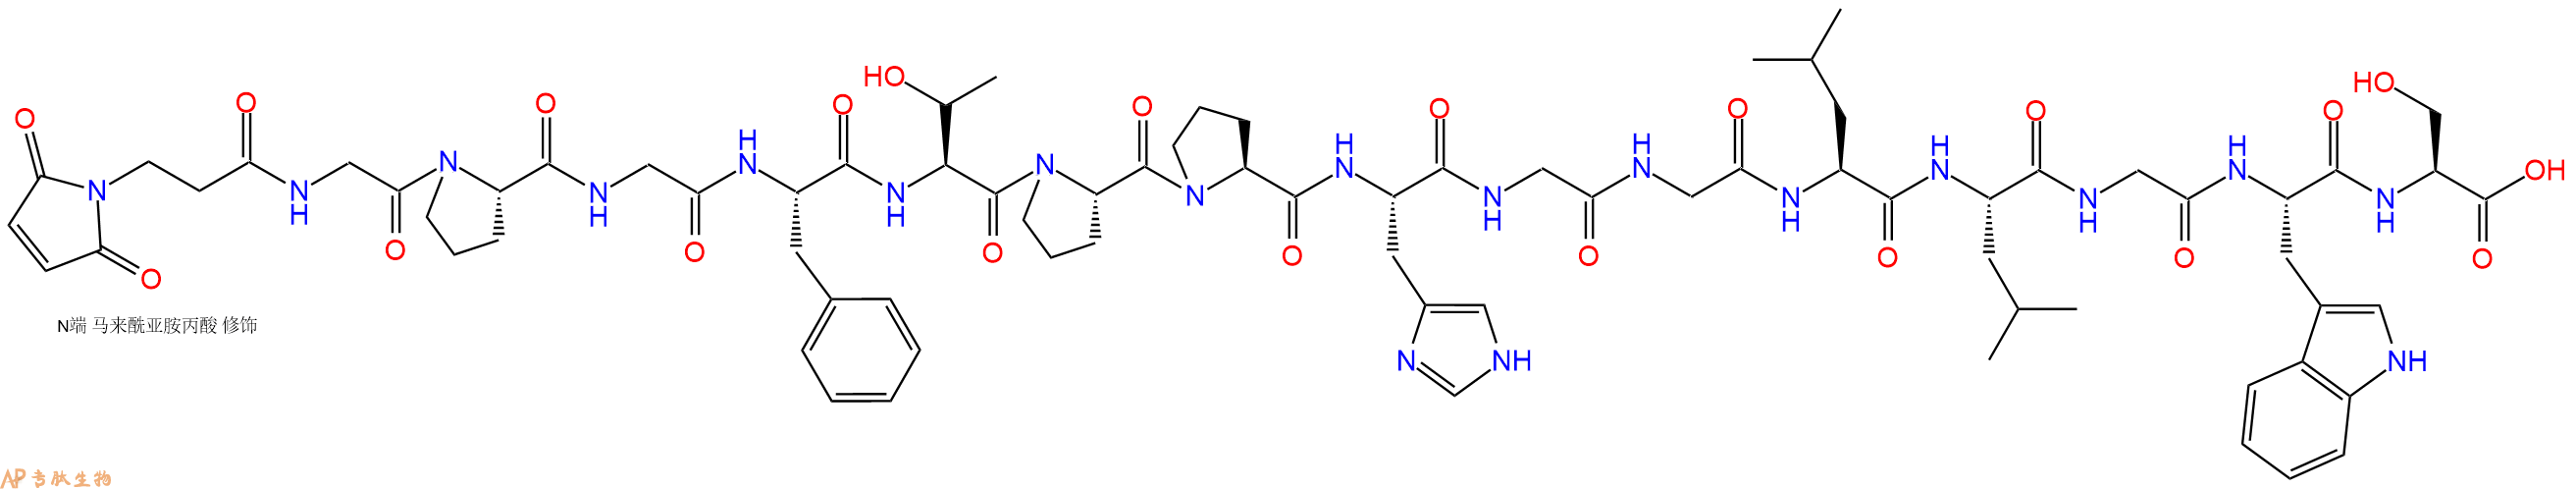 专肽生物产品3Mal-Gly-Pro-Gly-Phe-Thr-Pro-Pro-His-Gly-Gly-Leu-L